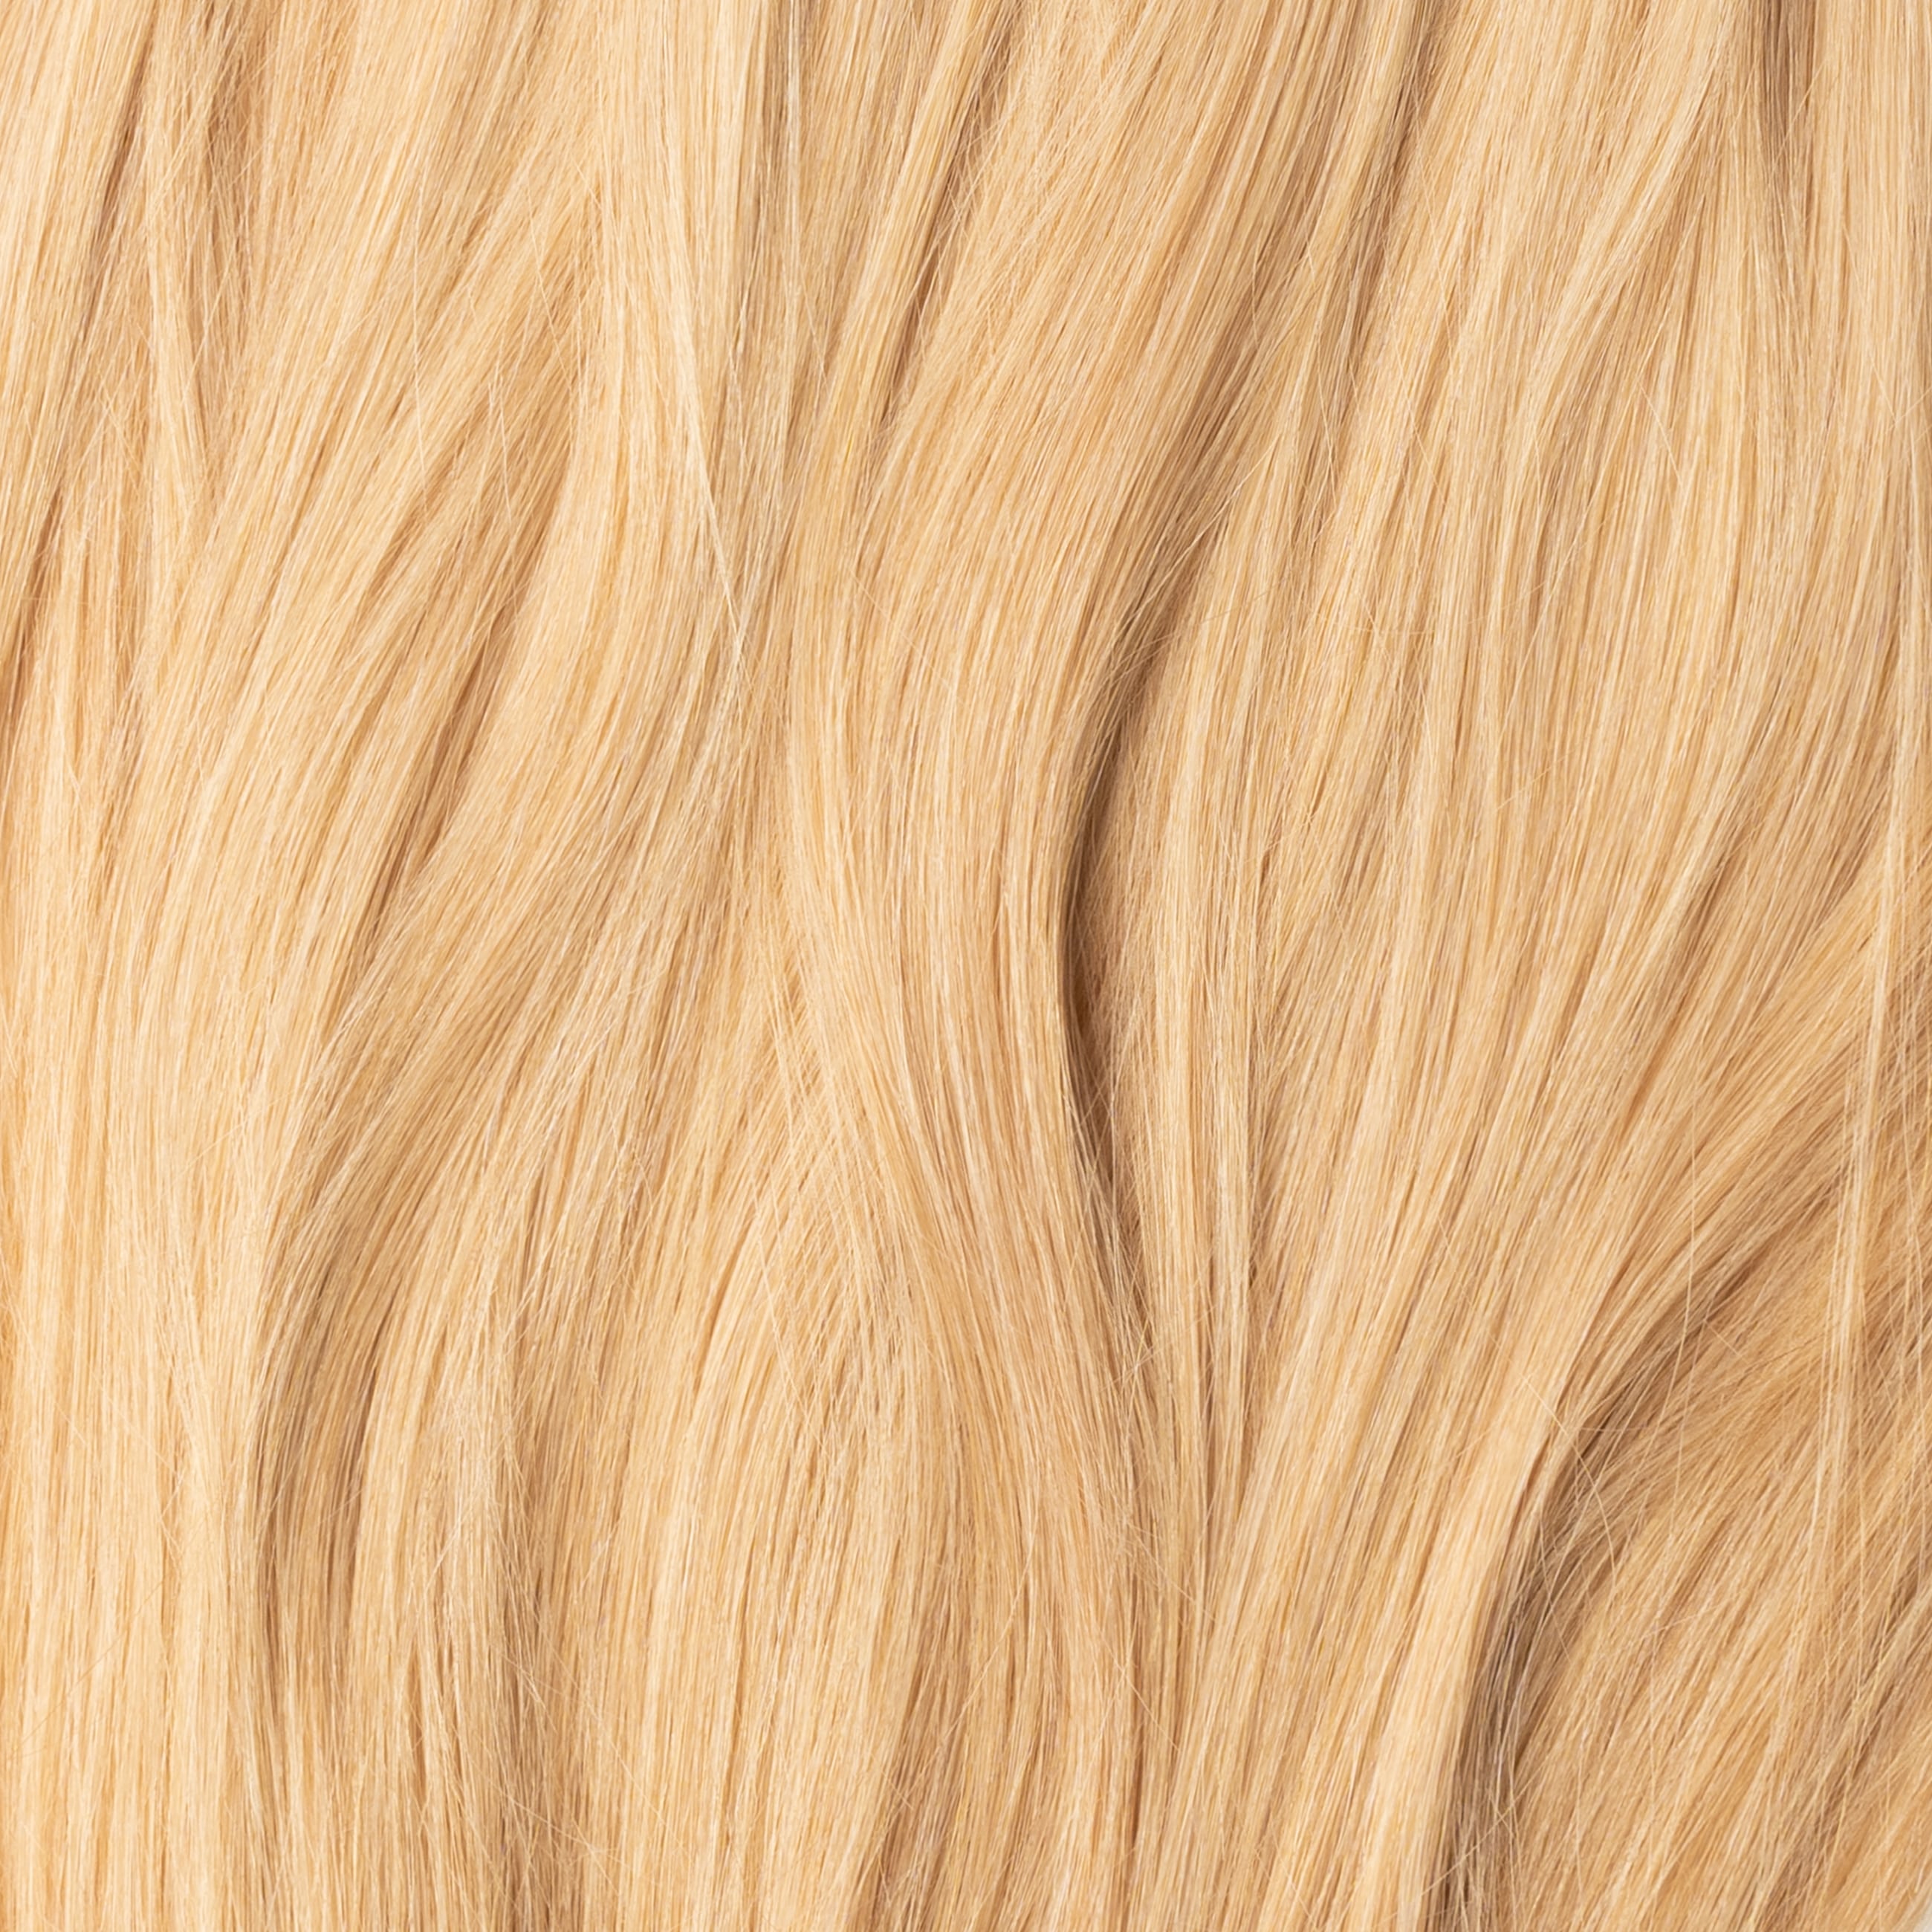 Tressen - Golden Blonde 18